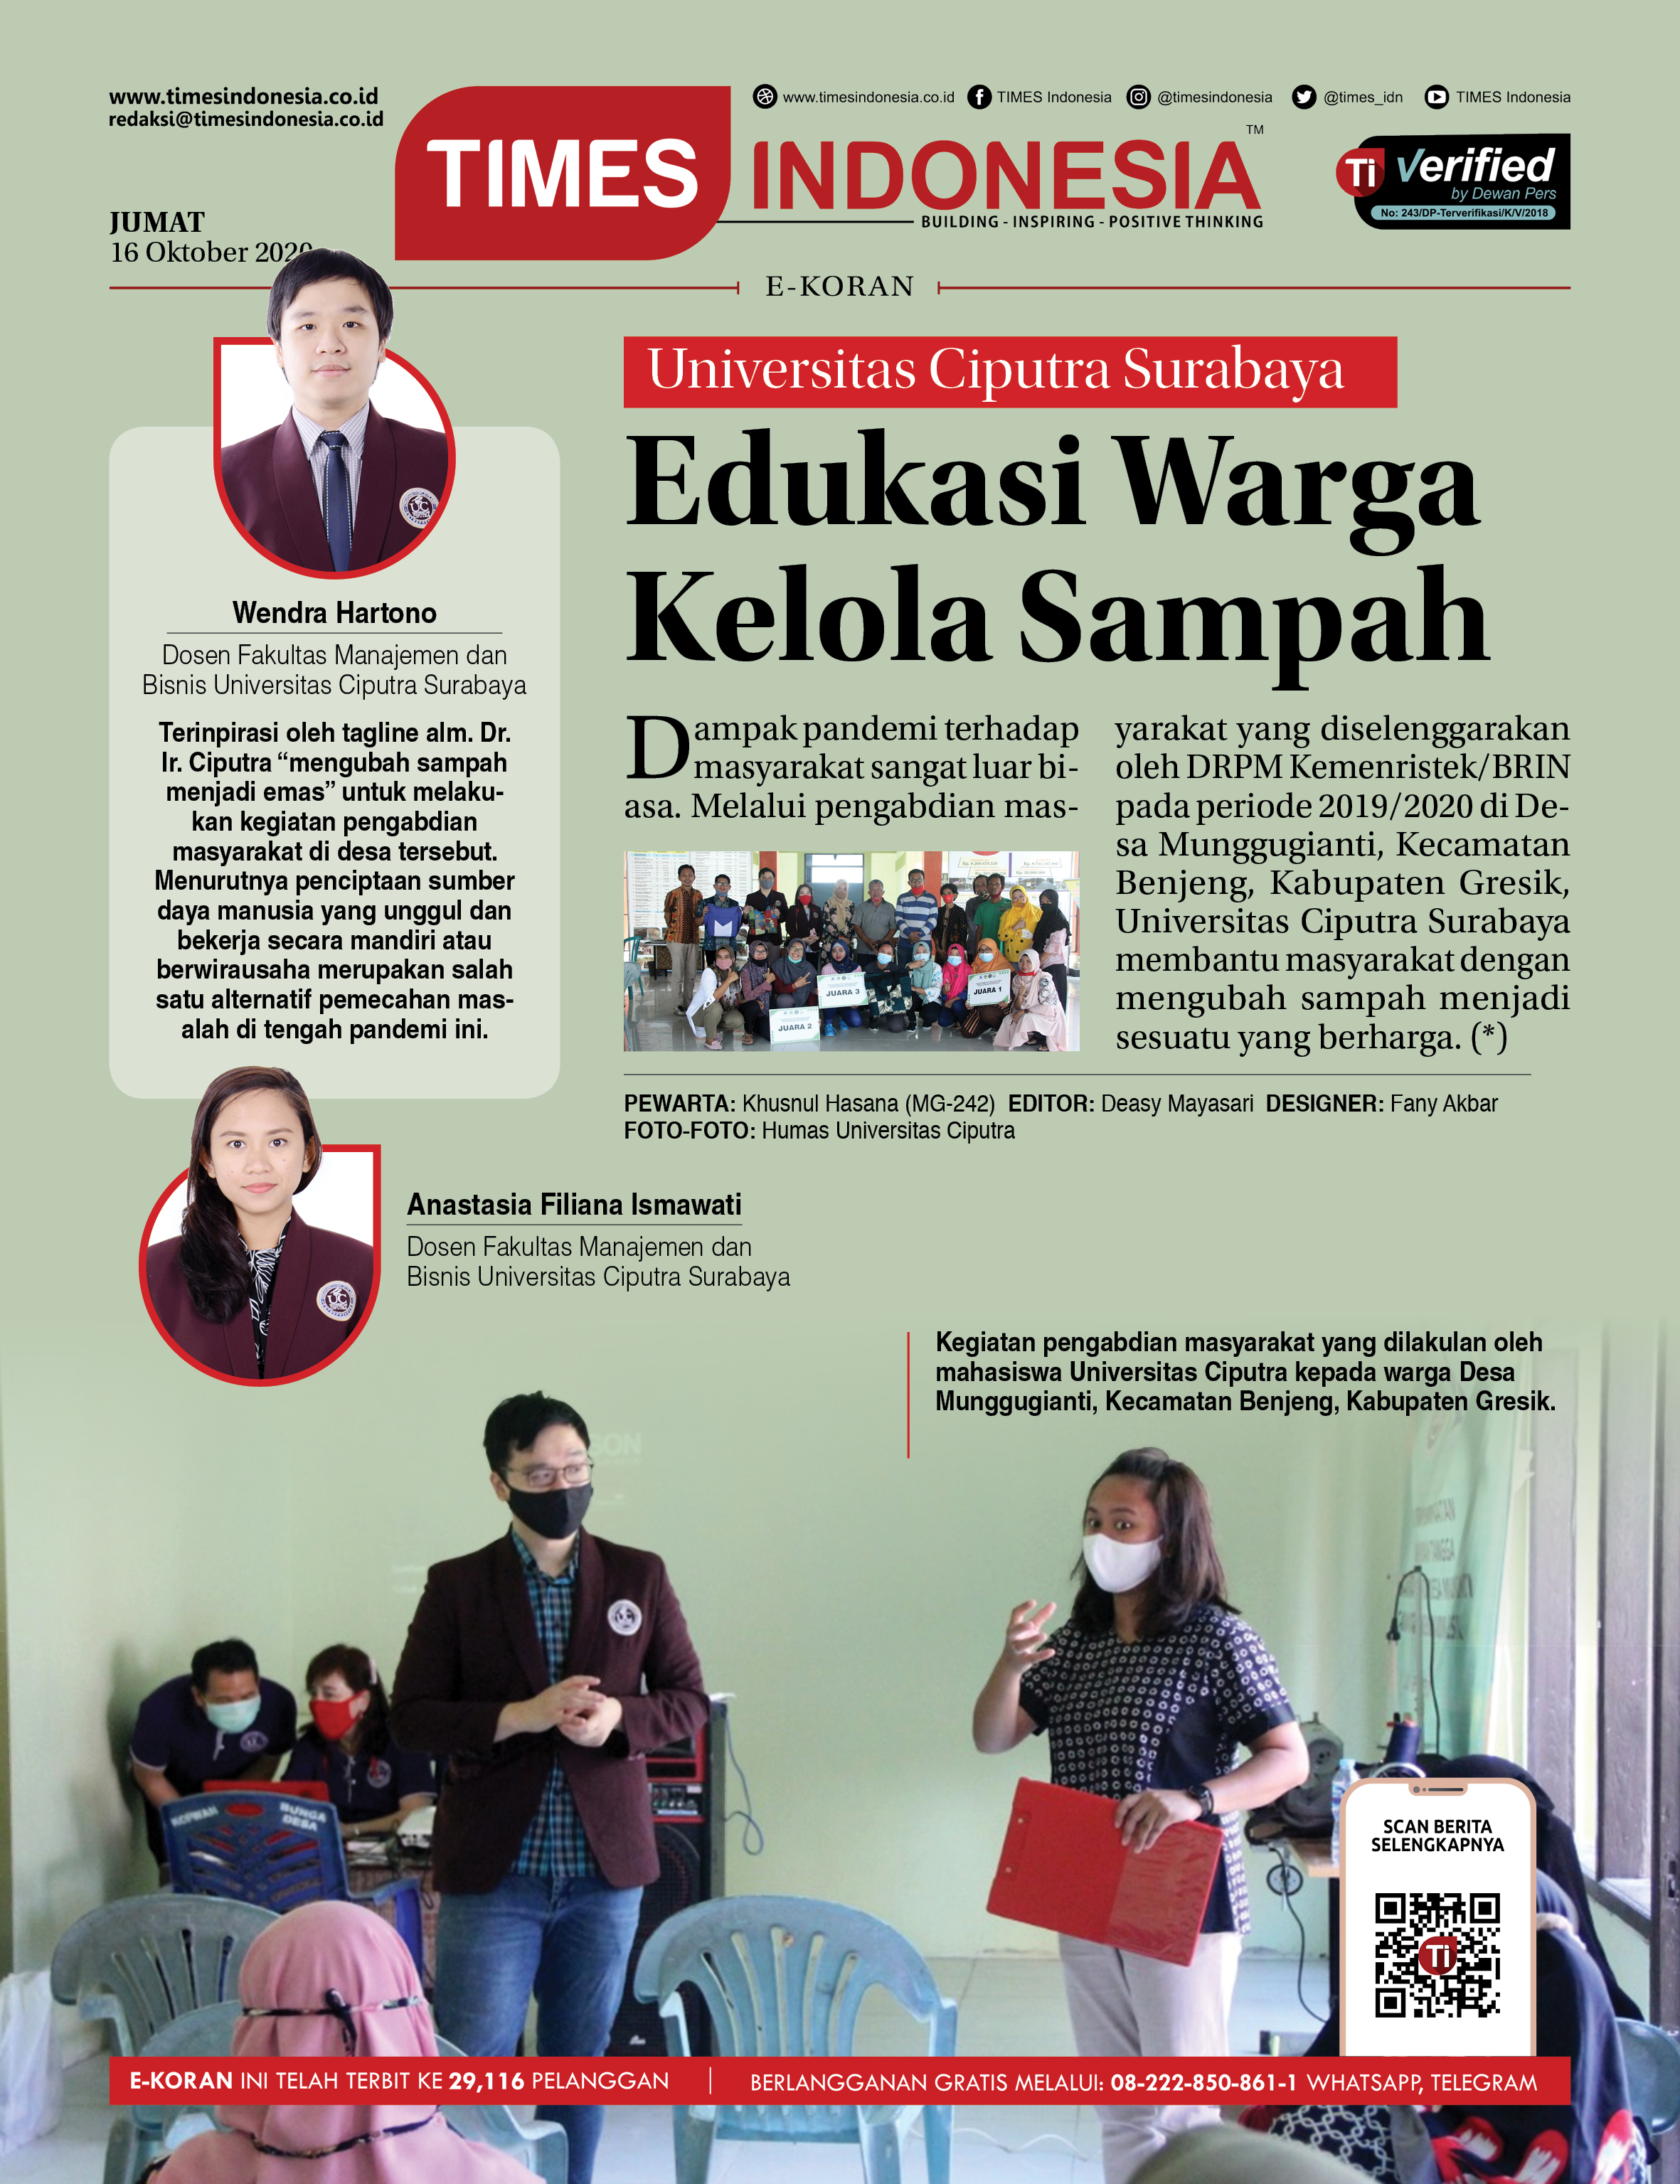 Ekoran-16-10-2020-Universitas-Ciputra-Surabaya-Edukasi-Warga-Kelola-Sampahhh.jpg